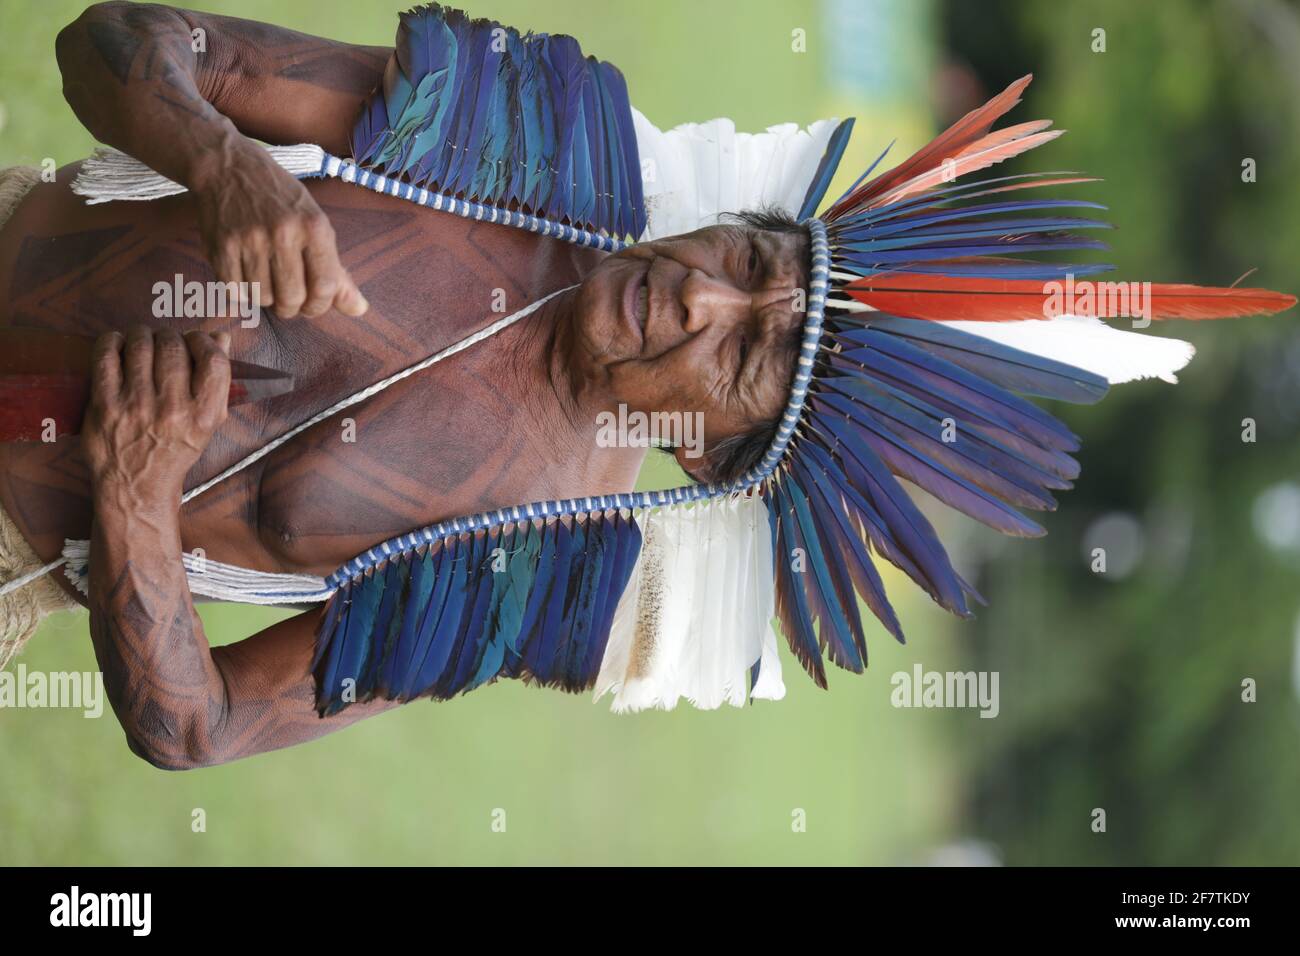 salvador, bahia / brésil - 29 mai 2017: Les Indiens de diverses tribus et groupes ethniques de Bahia campent à Salvador (BA) pour discuter de la conjoncture politique Banque D'Images